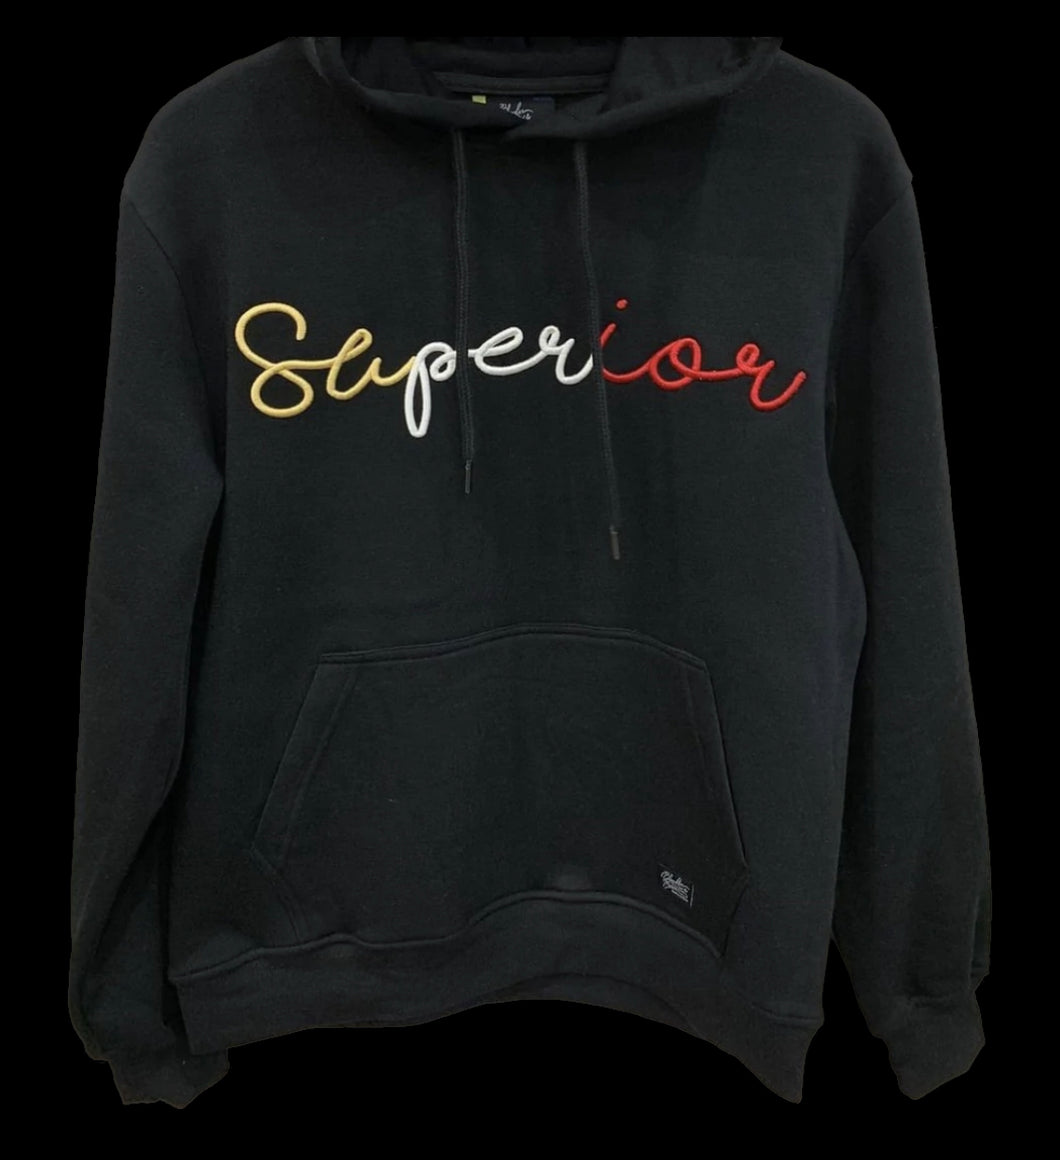 Black Superior hoodie